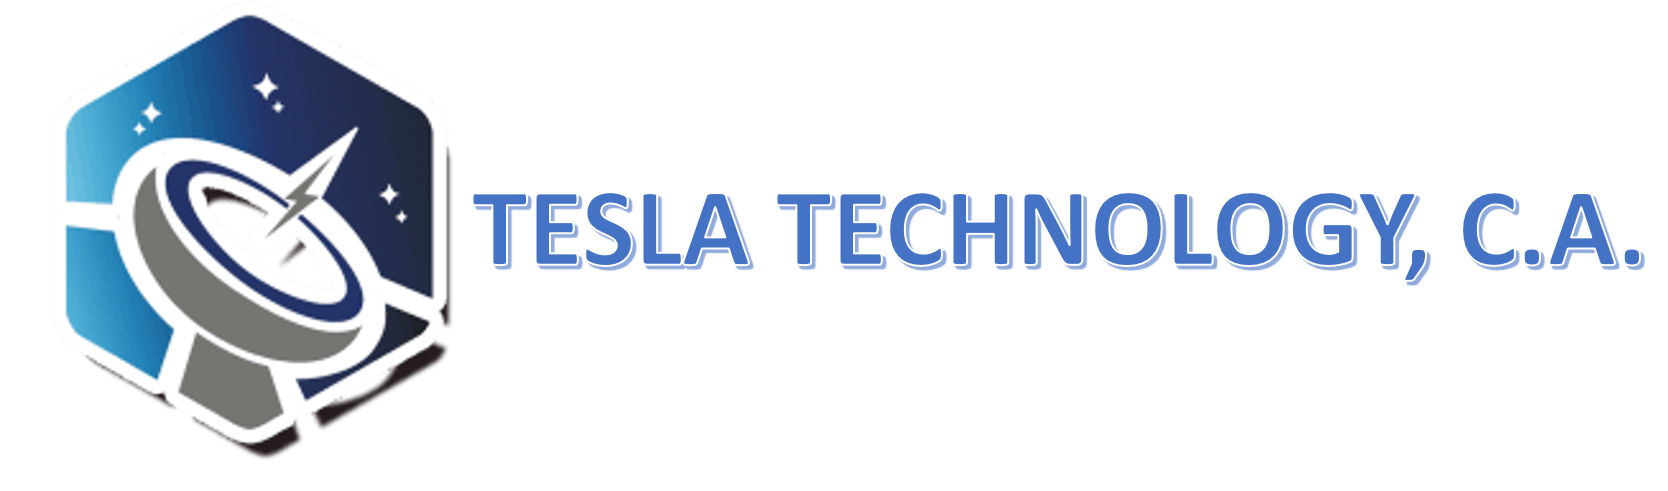 Tesla Technology C.A.